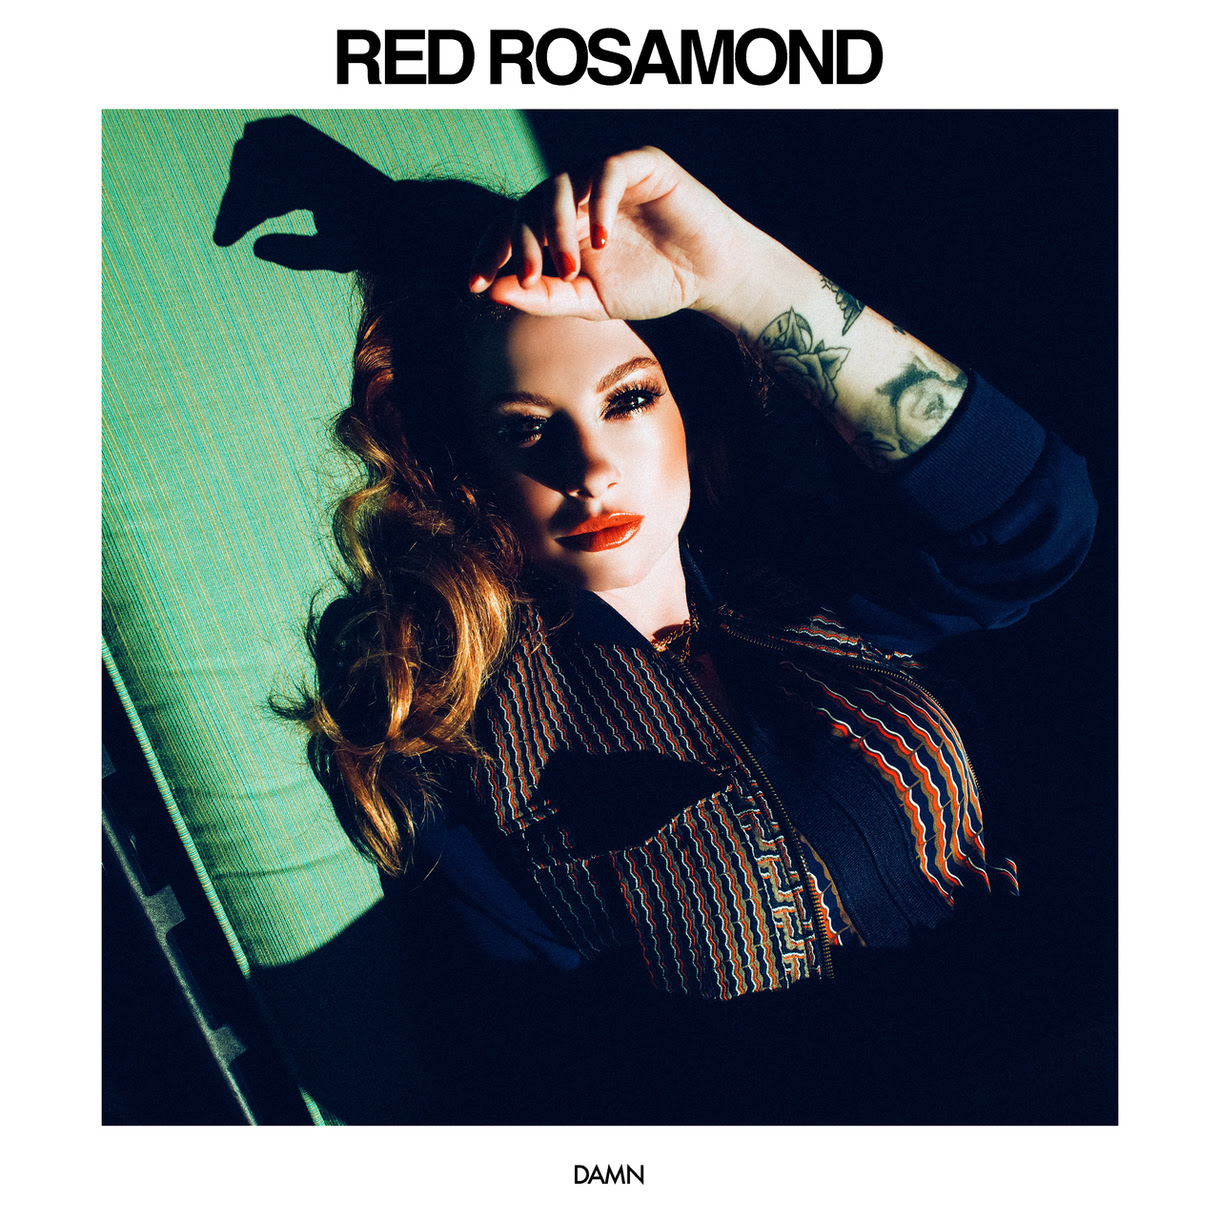 Red Rosamond